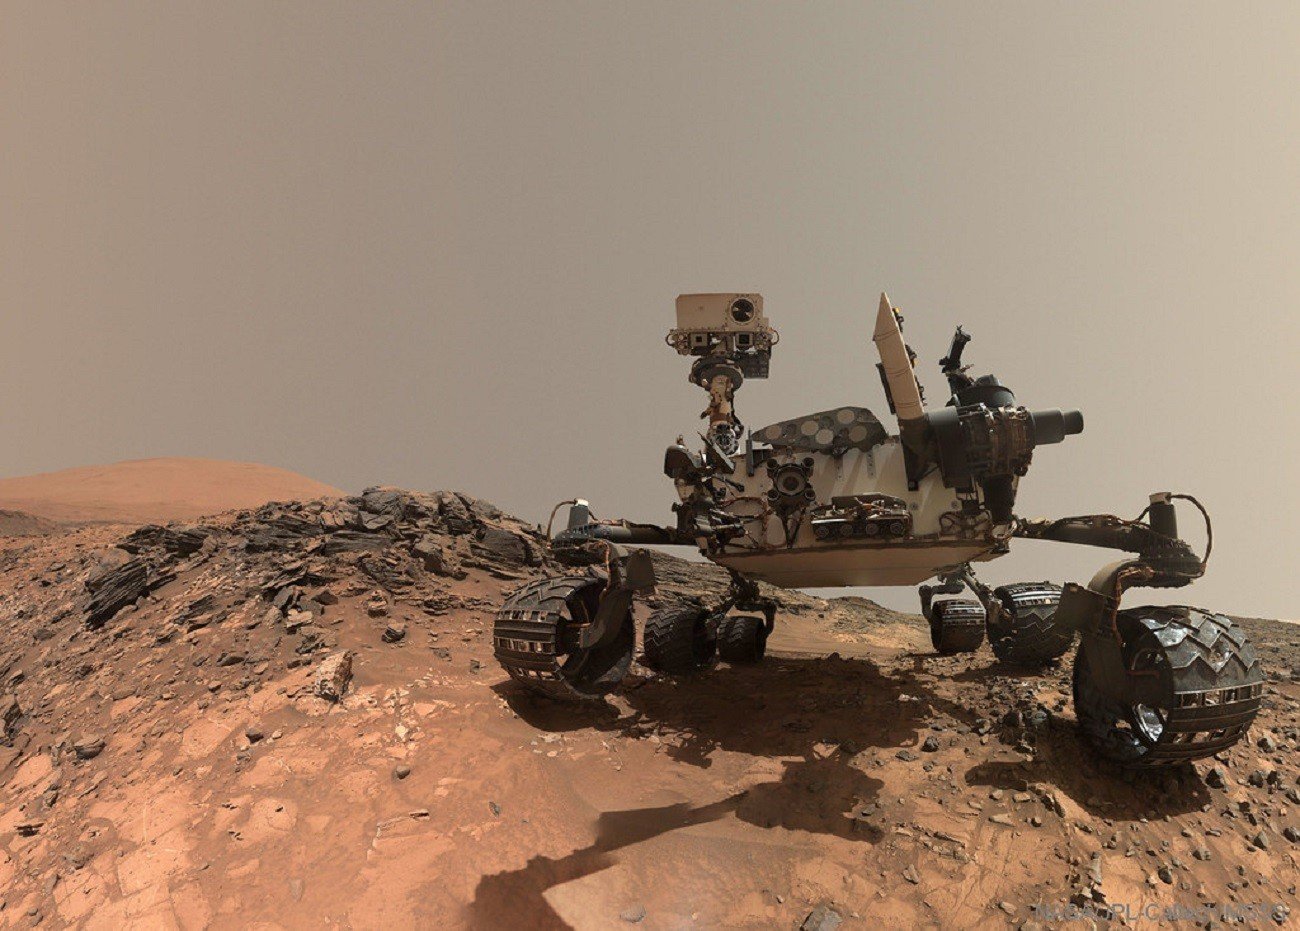 Skąd się bierze metan na Marsie? Naukowcy bliscy rozwiązania zagadki